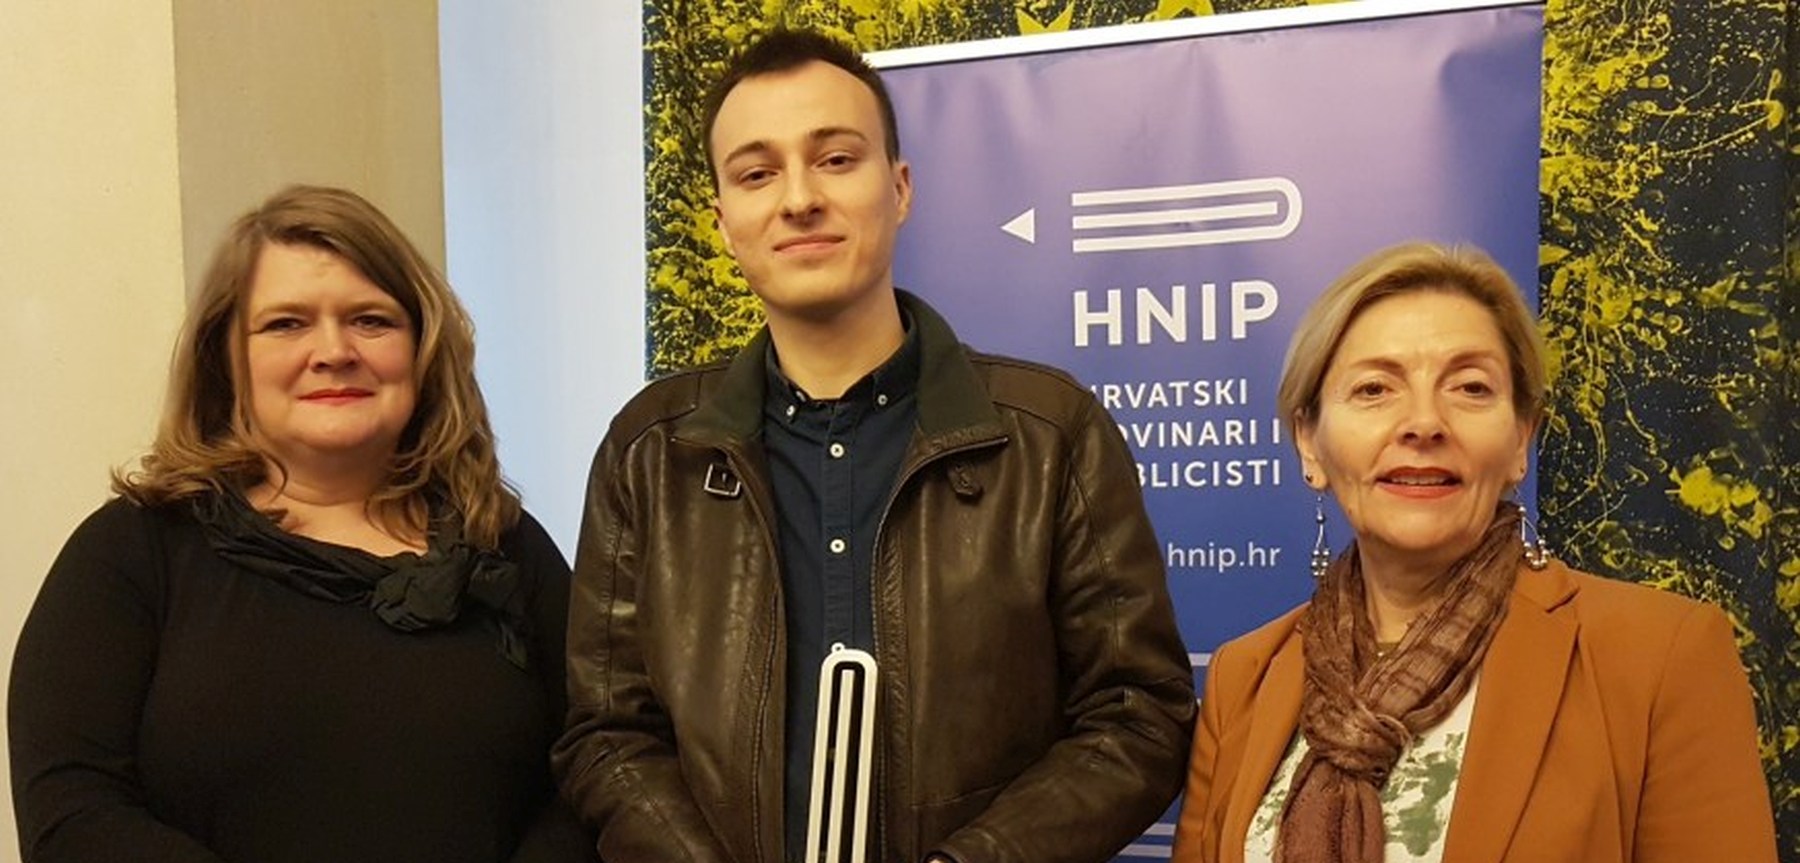 ‘Neostarčevićanci vs. poststarčevićanci’ Matije Štahana odnijeli Godišnju novinarsku nagradu HNiP-a